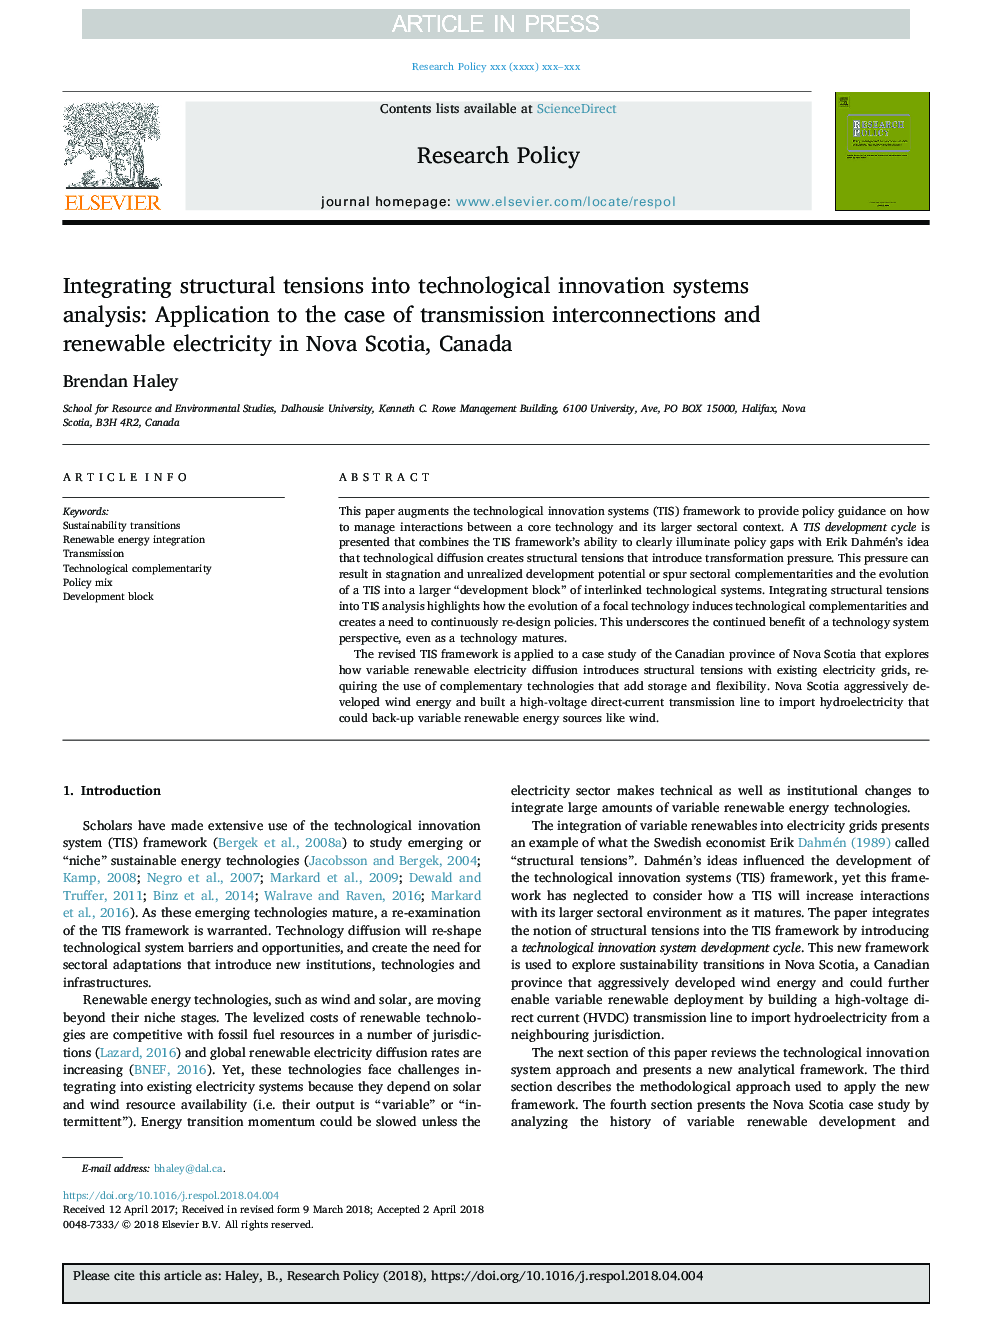 ادغام تنش های ساختاری در تجزیه و تحلیل سیستم های نوآوری در فن آوری: کاربرد در مورد اتصالات انتقال و برق تجدید پذیر در نووا اسکوشیا، کانادا 